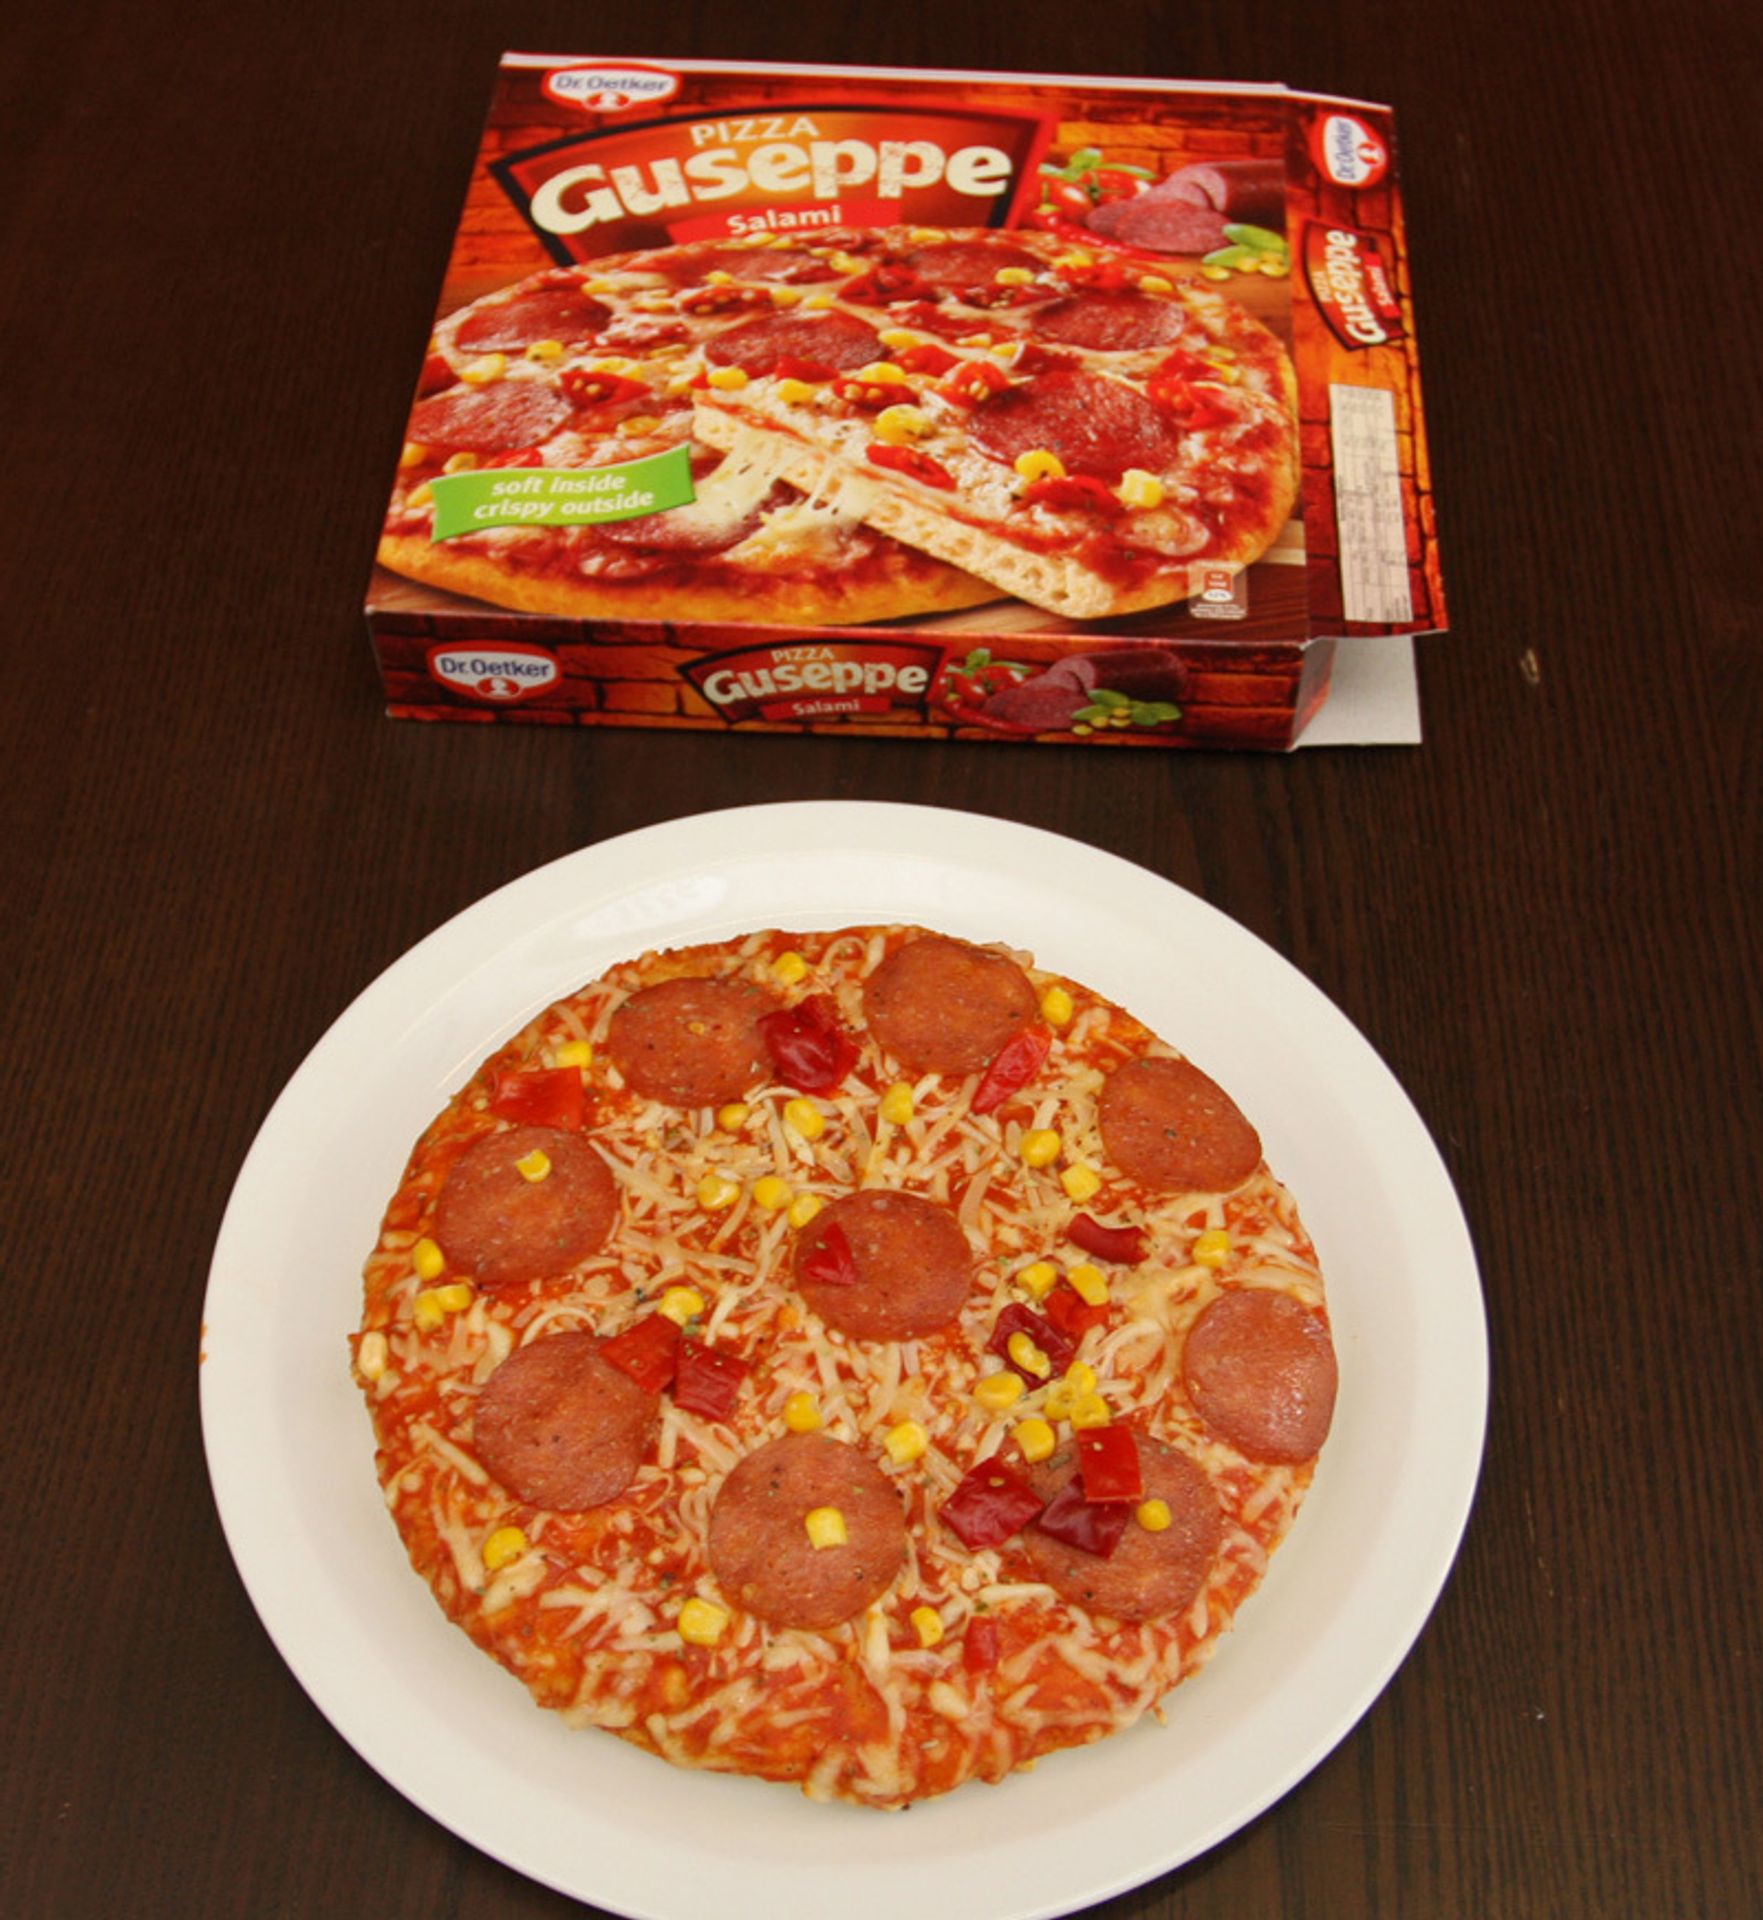 Test - pizza - gelerie - 7 - Testované pizzy (7/13)